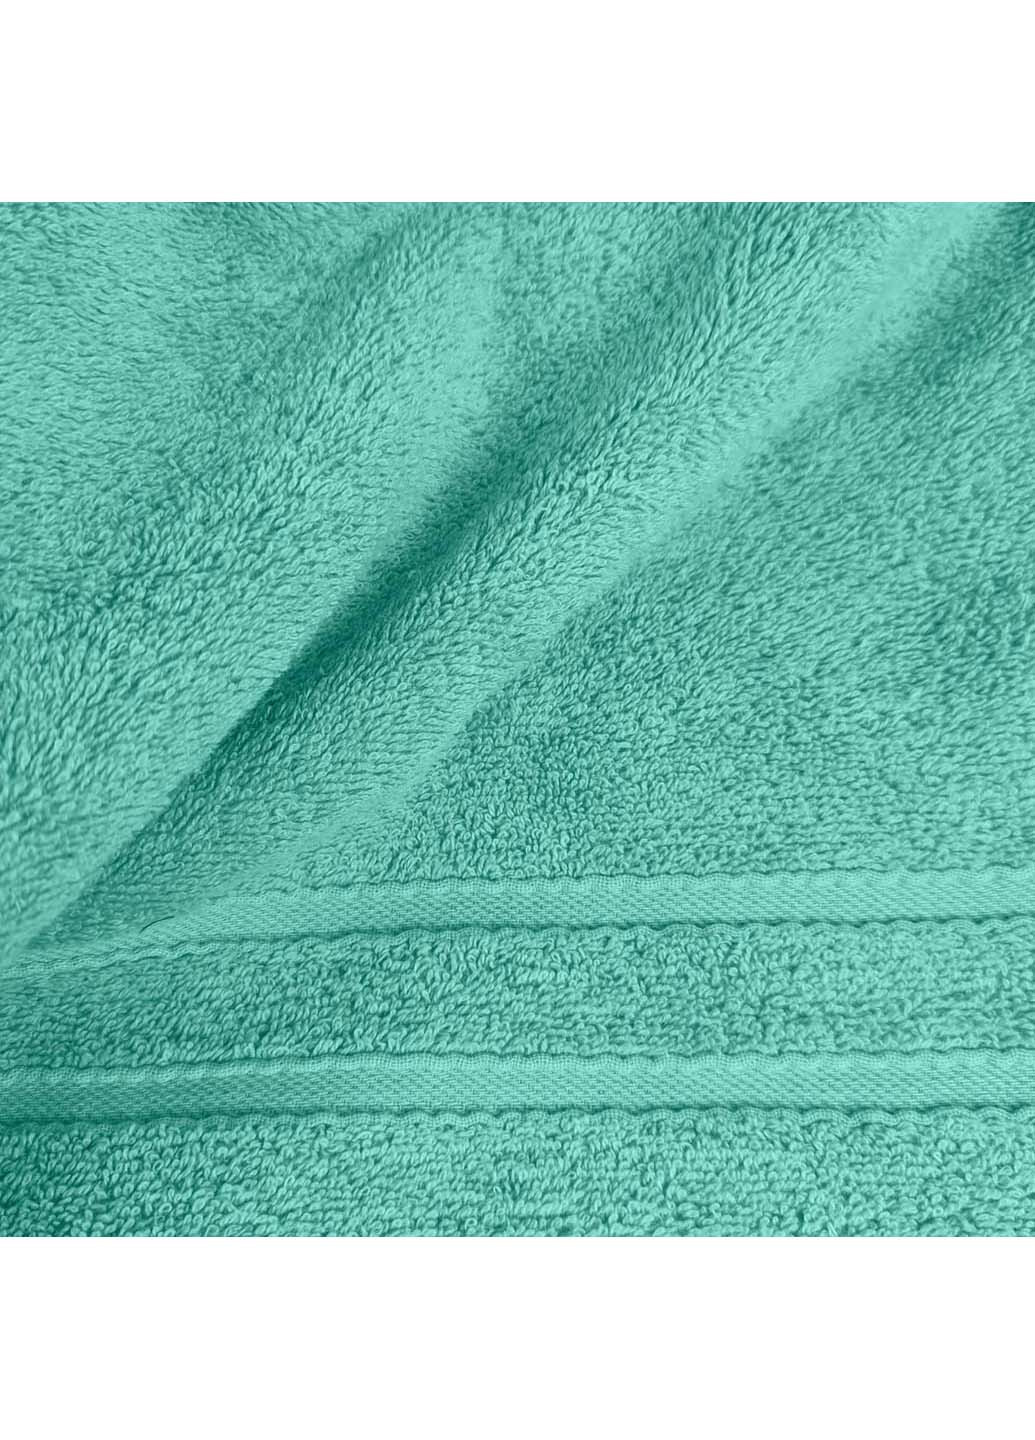 Cosas полотенца махровые agave 2 шт мятный производство -